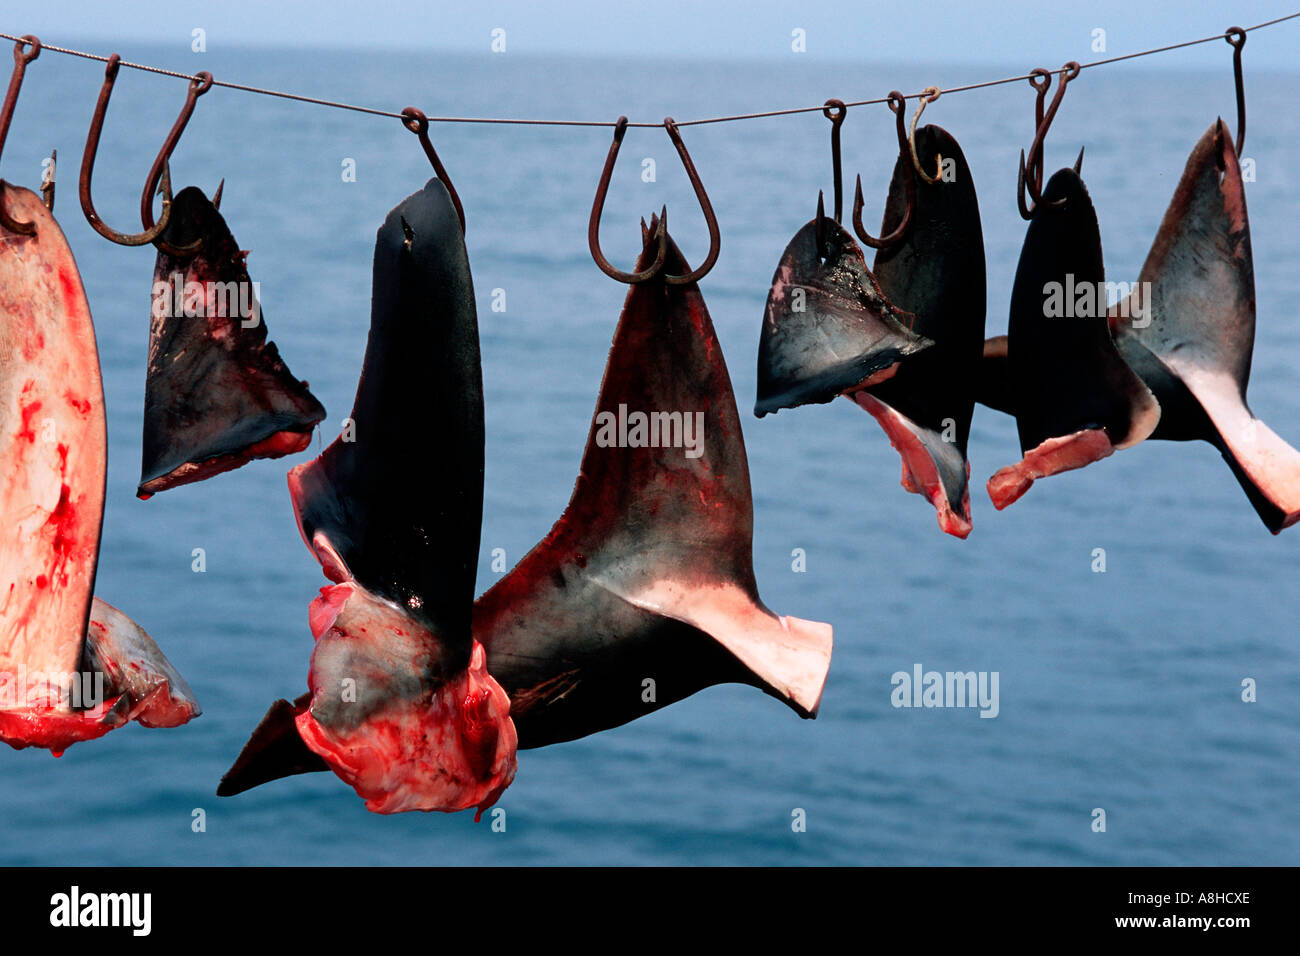 Descenso repentino abajo Sin valor Shark finning es uno de los más destructivos de la pesca de tiburones son  asesinados innecesariamente, y sus aletas son recolectados para la sopa de  aleta de tiburón del estado de Baja